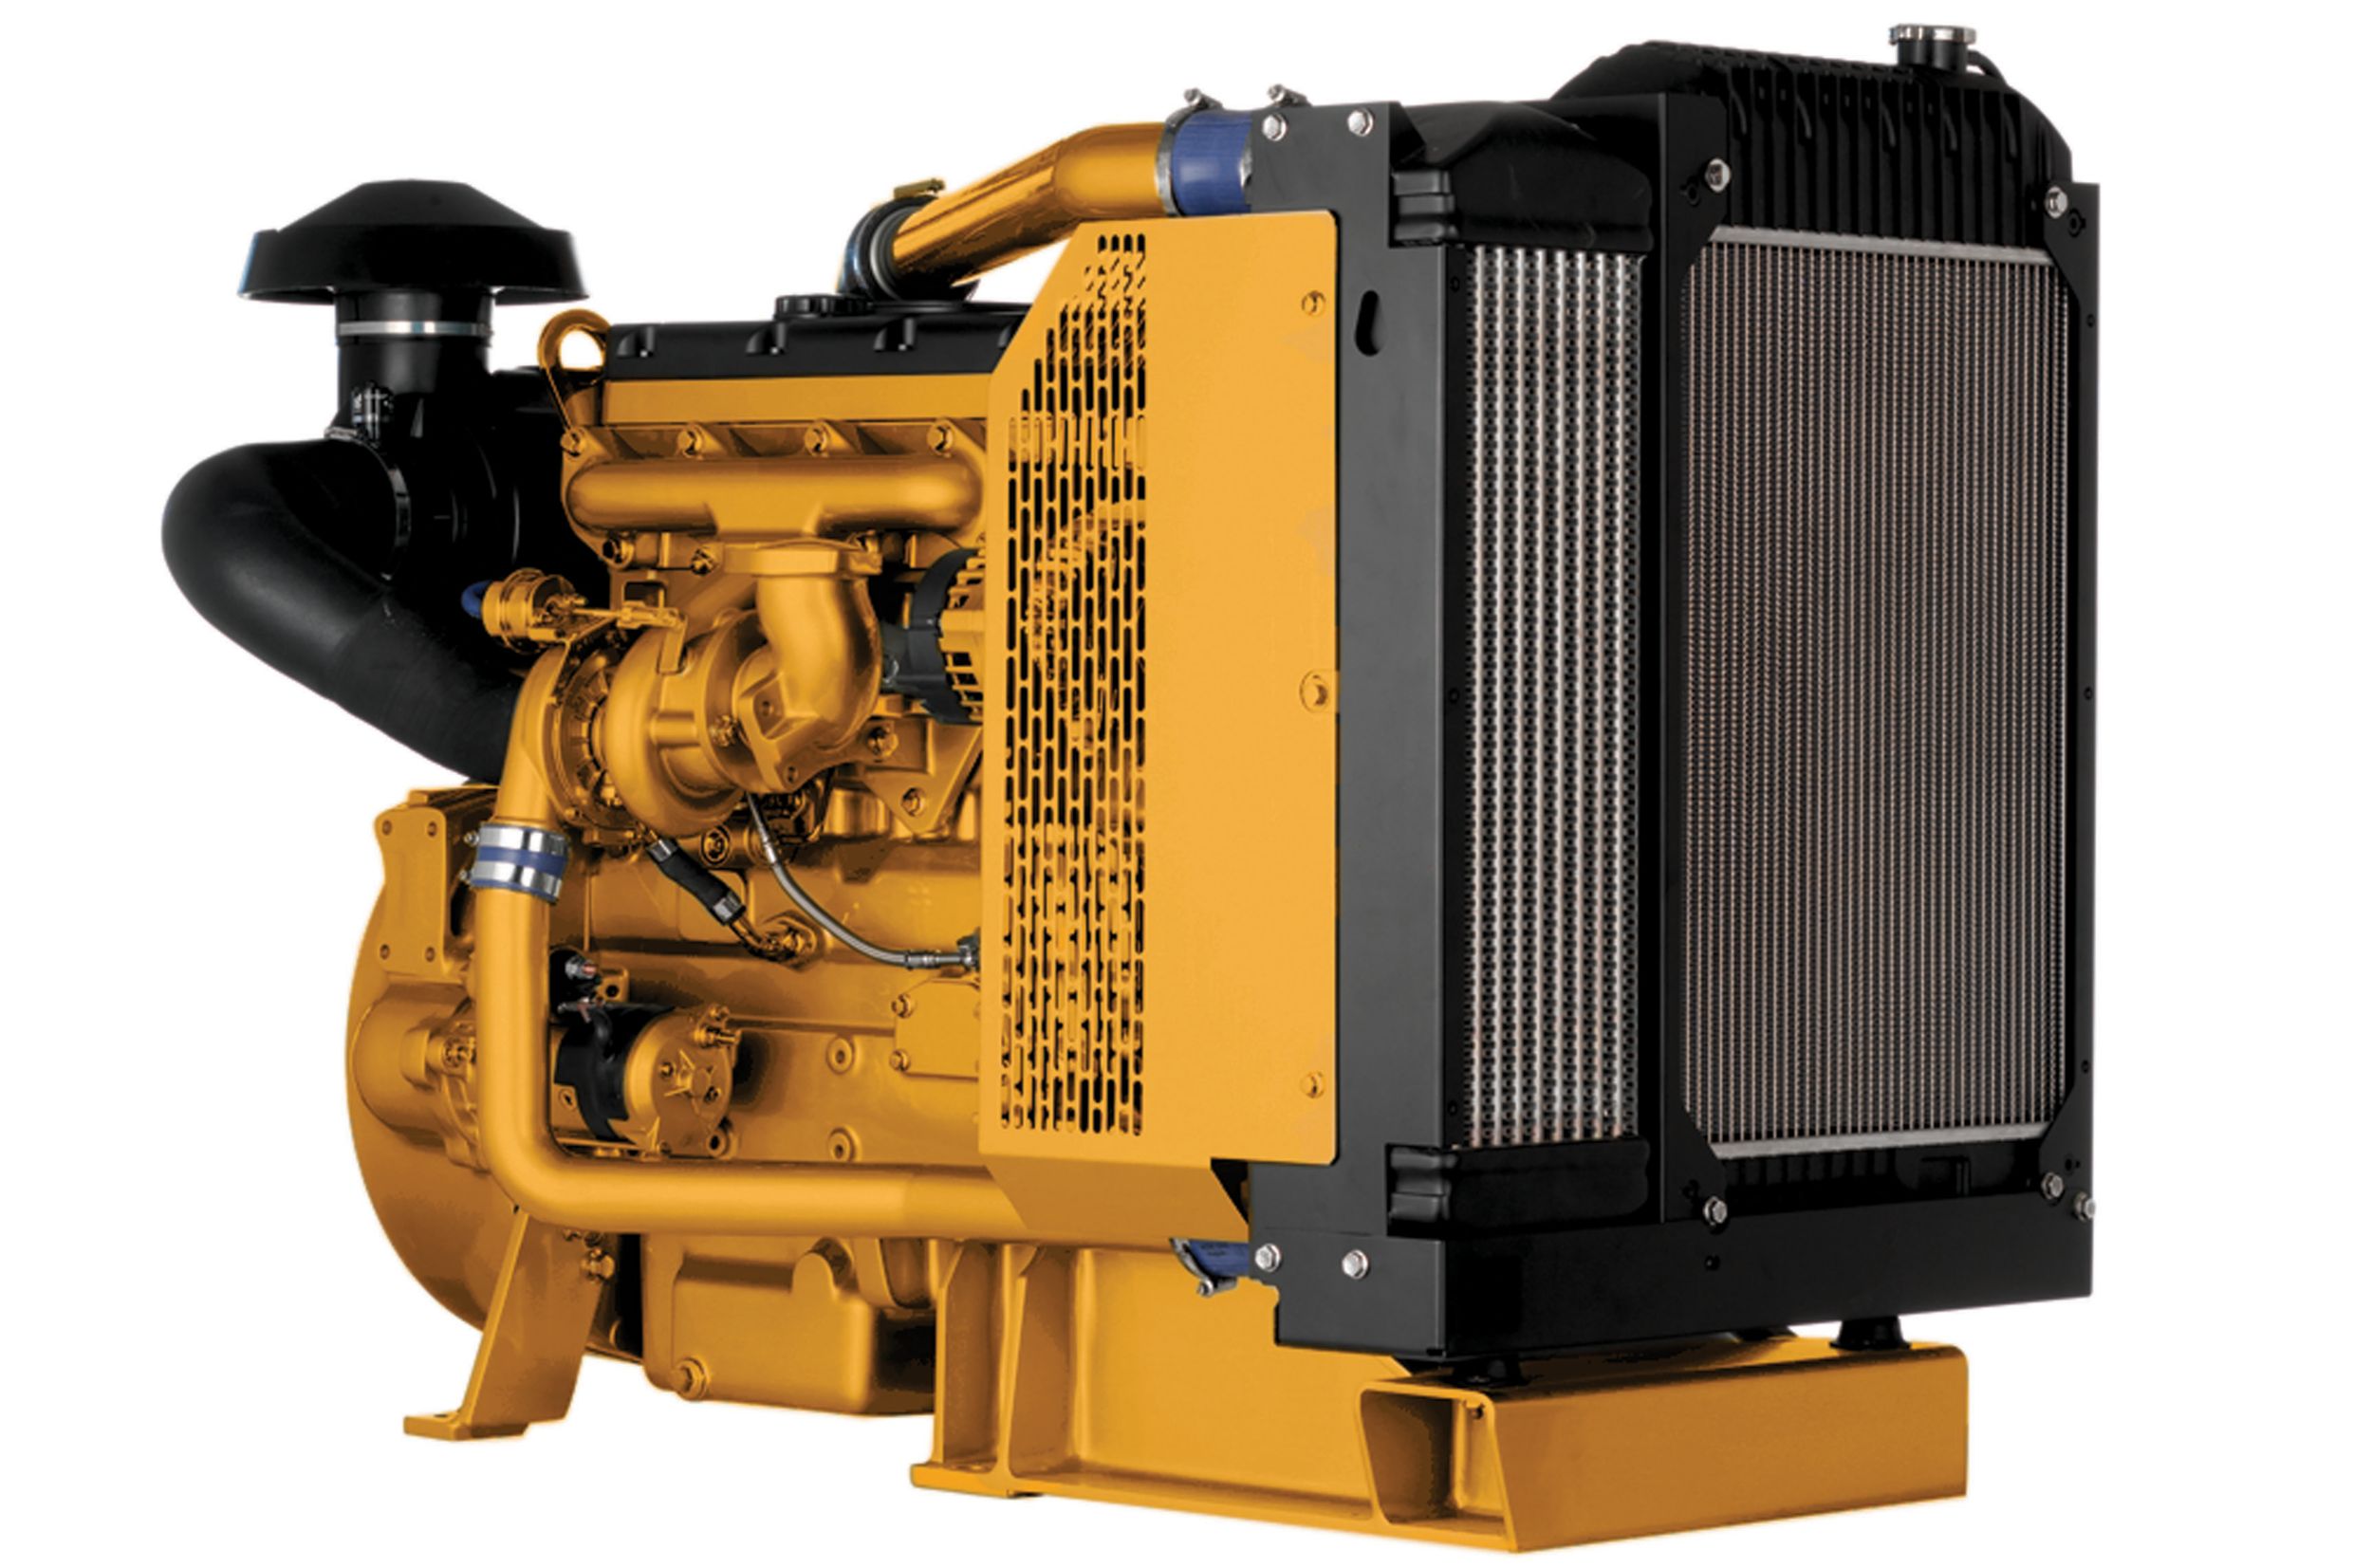 Unidade de Energia Industrial C4.4 LRC Unidades de Energia Diesel - Menos regulamentadas e não regulamentadas